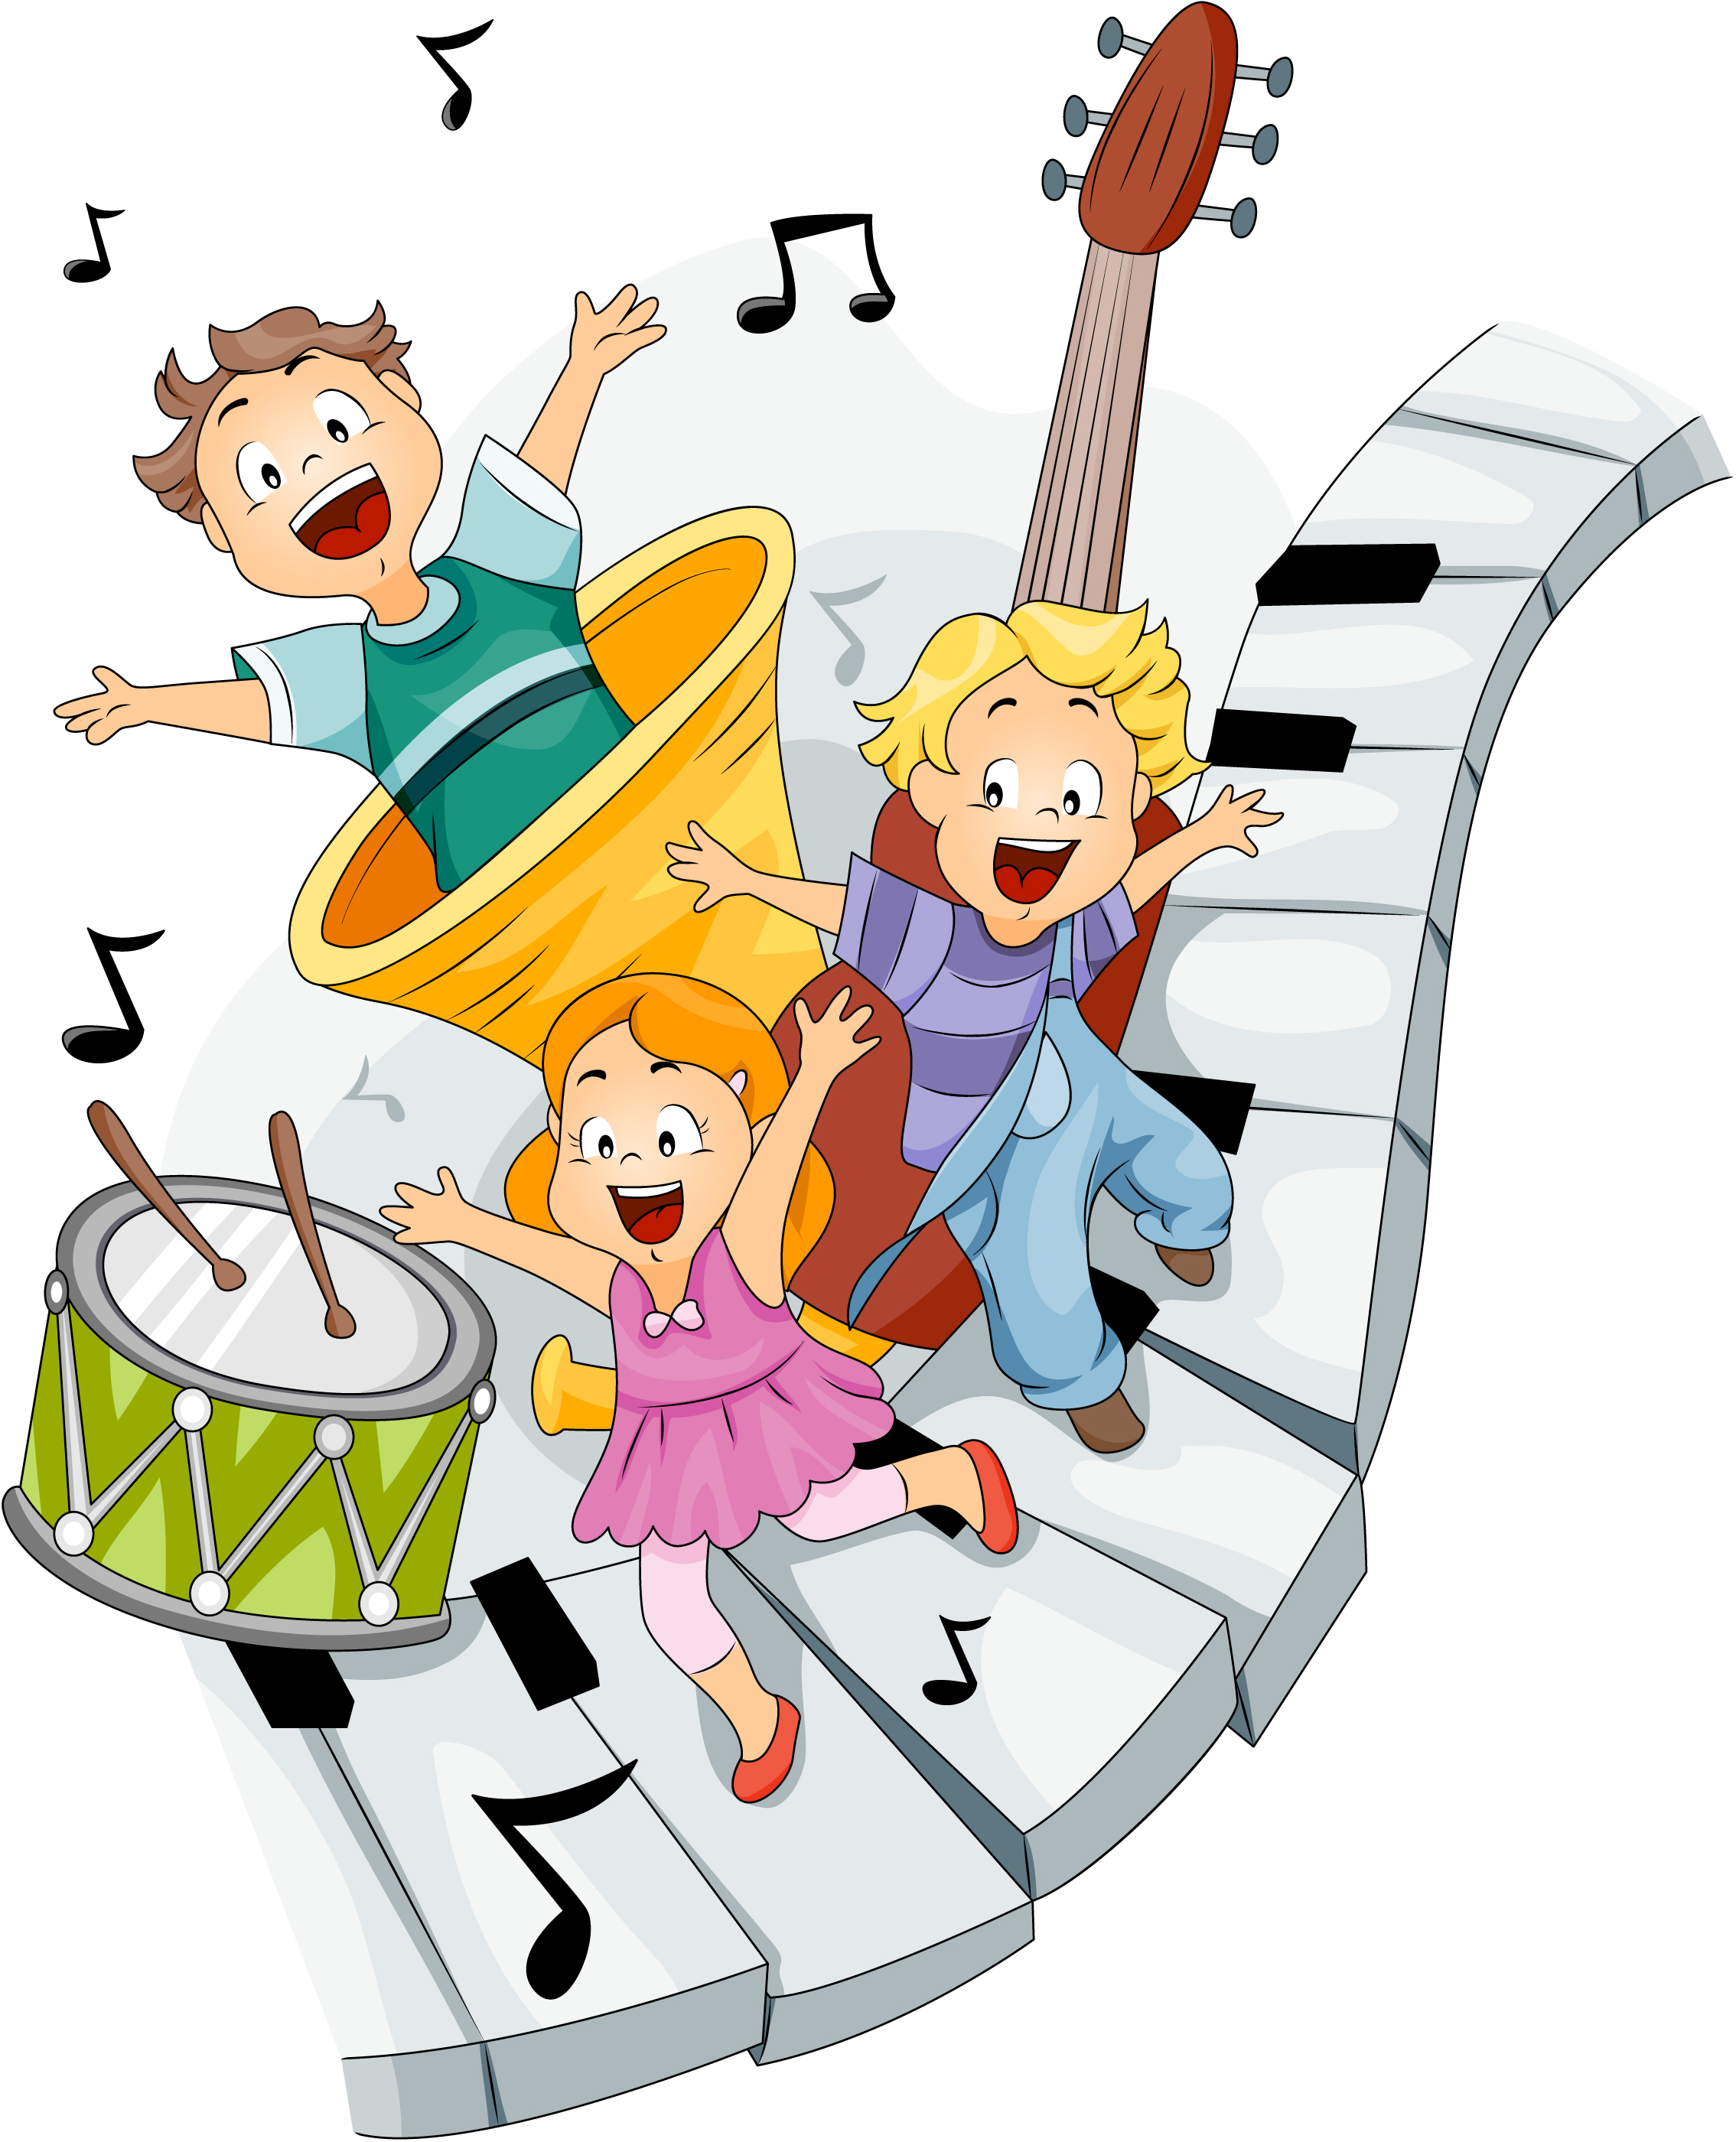 Музыка для детей веселая игр и конкурсов. Музыкальные картинки для детей. Музыкальные инструменты для детей. Веселые музыканты. Картинки на музыкальную тему.